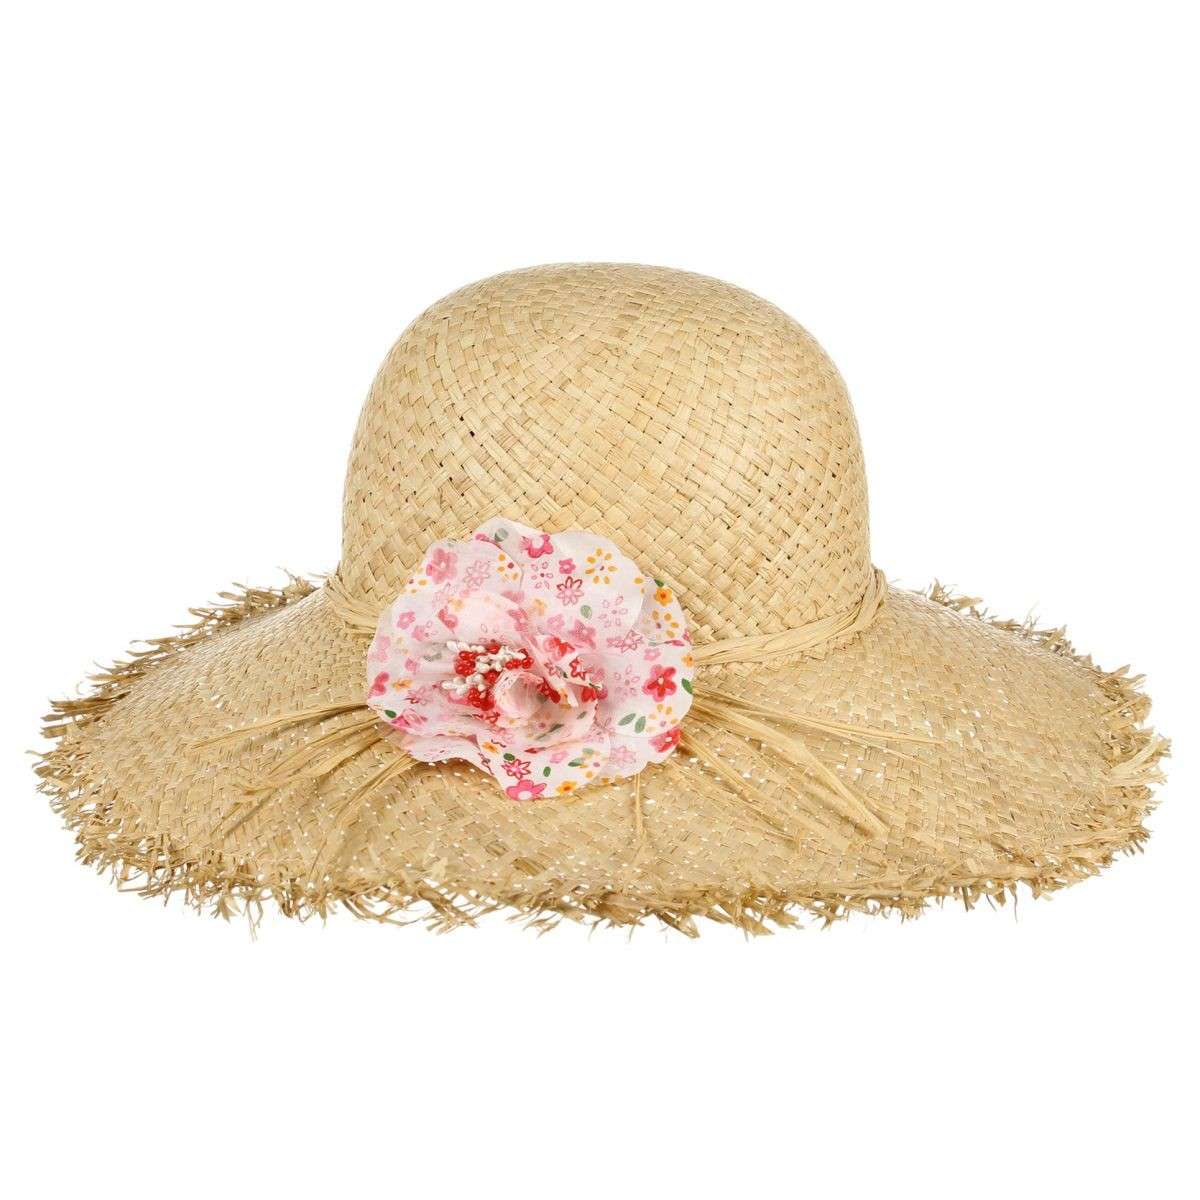 Fiore fantasia sul cappello